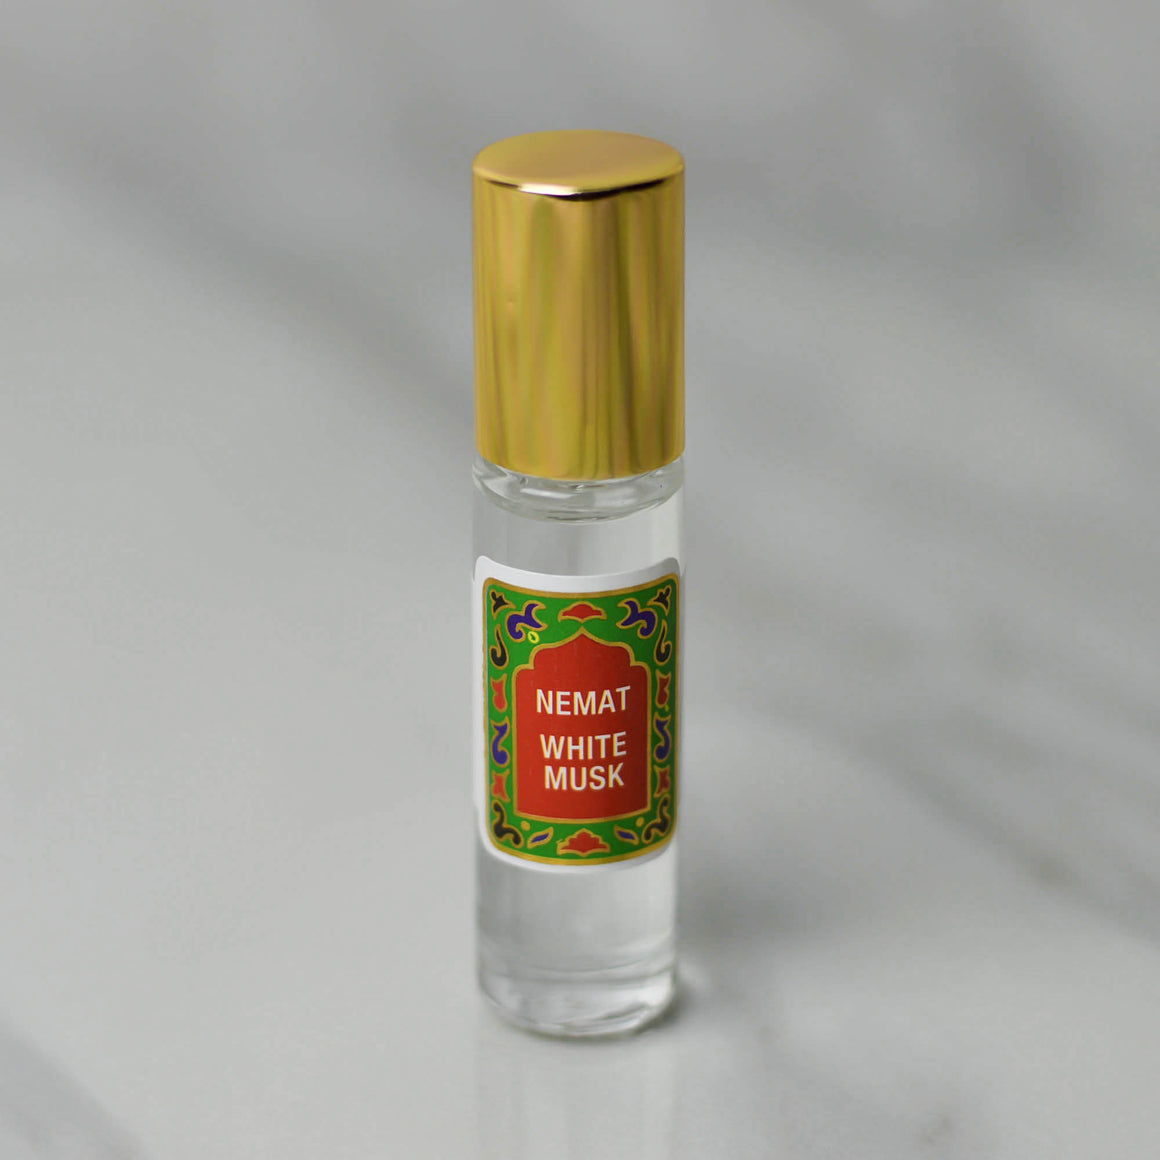 White Musk-Nemat's Fragrance Oil